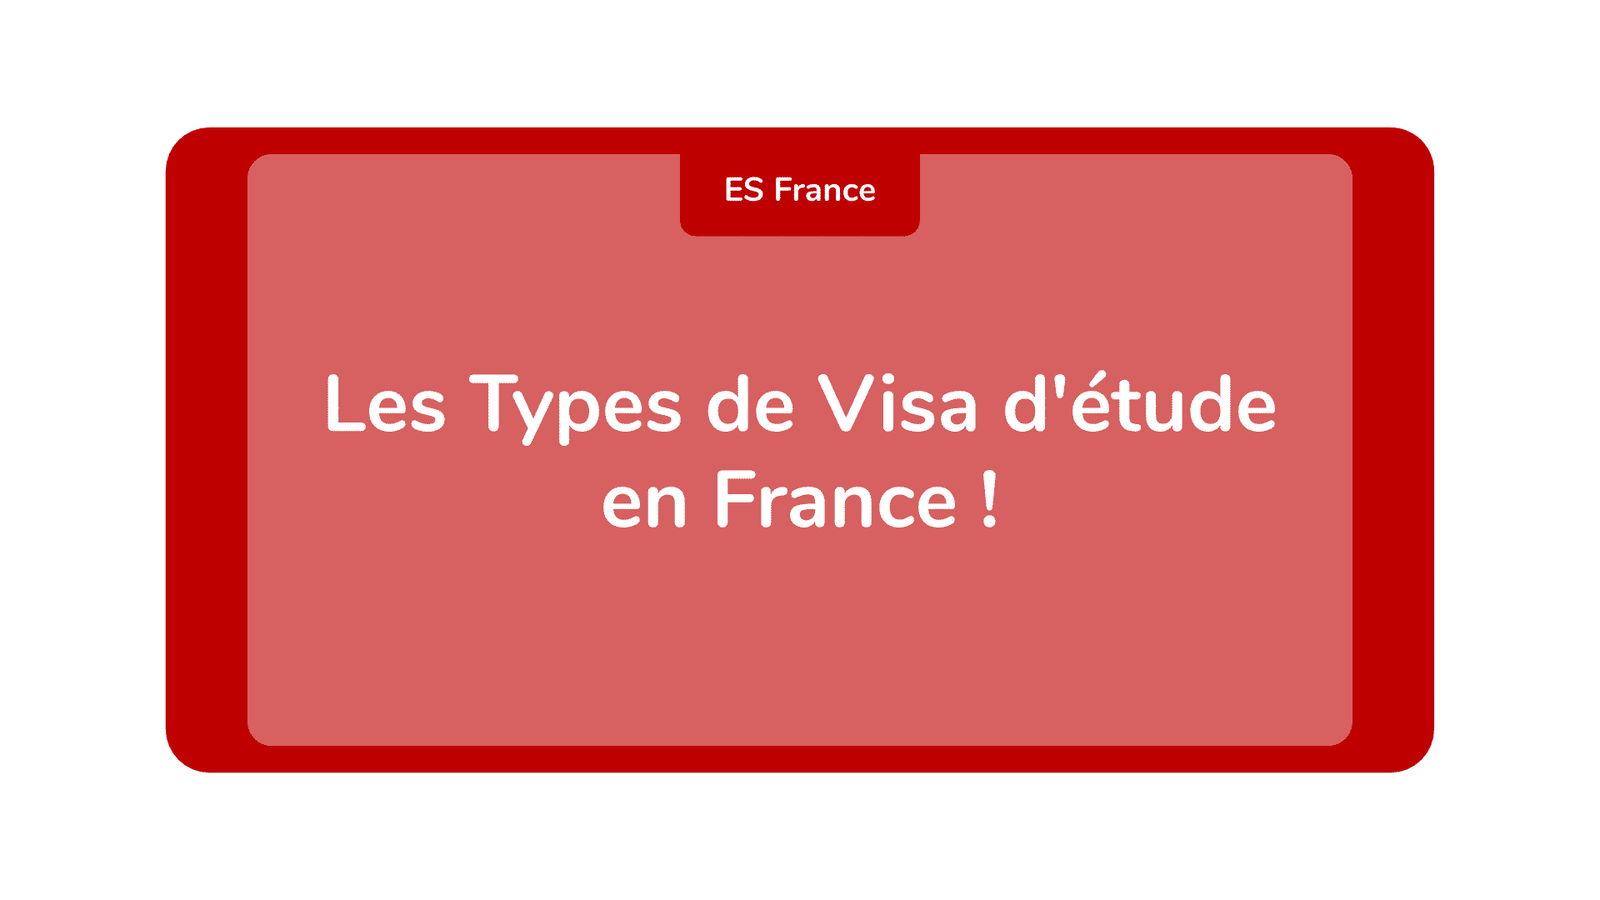 Les Types de Visa d'étude en France !